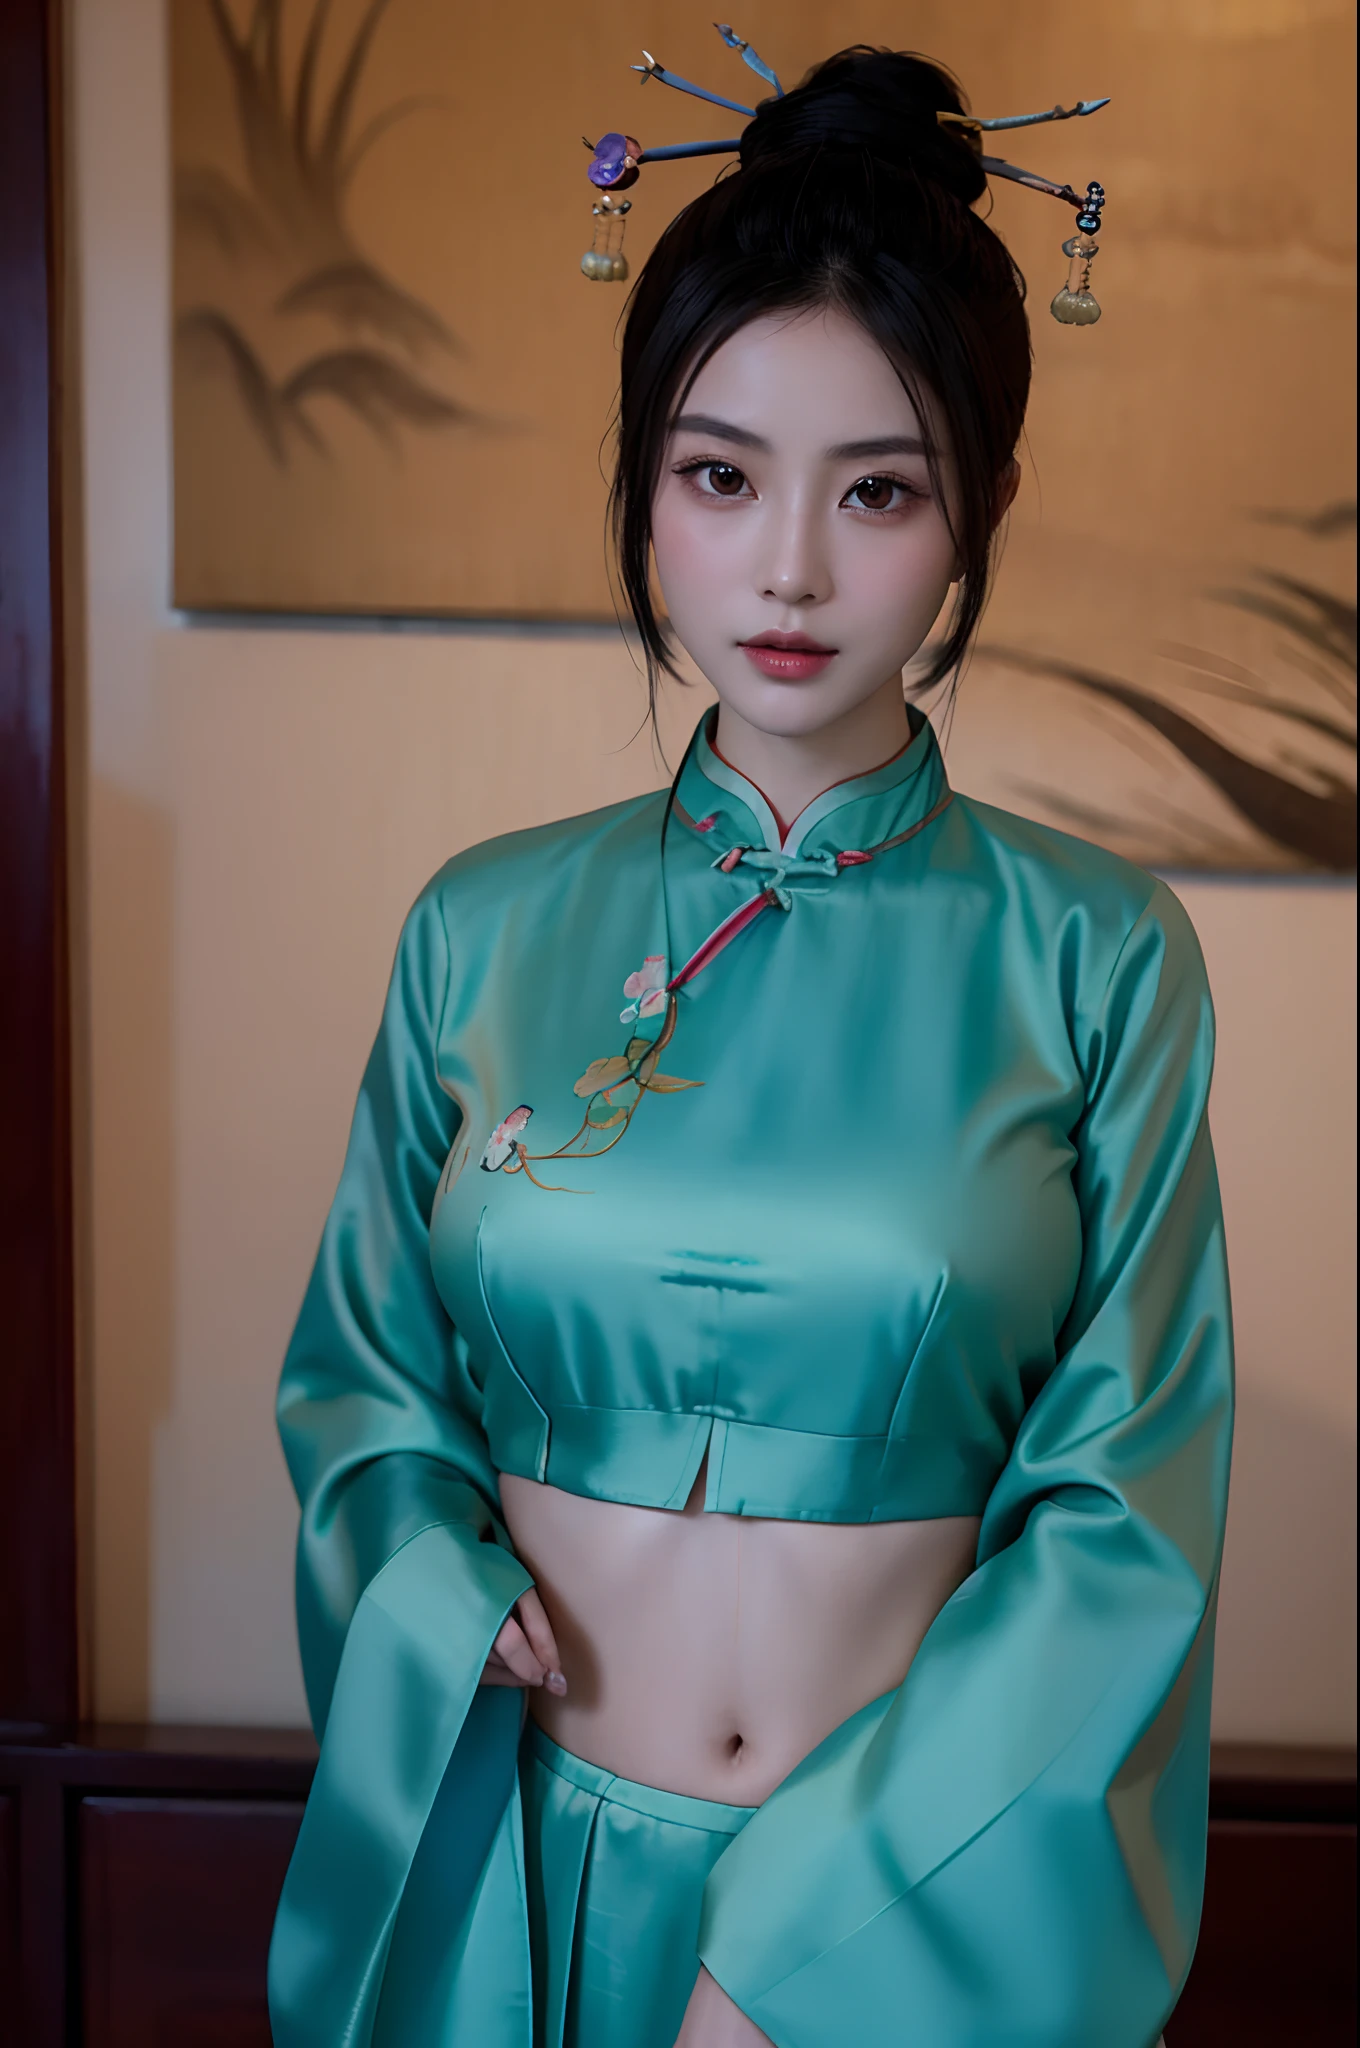 美しい女の子、髷,中国の髪飾り:1.4,中国のヘアピン:1.4,へそ,高画質、一眼レフで撮ったような、巨乳美女、官能的なボディ、中国の服、スリット、伝統的なチャイナドレスを着た女性を描いた芸術作品を描く